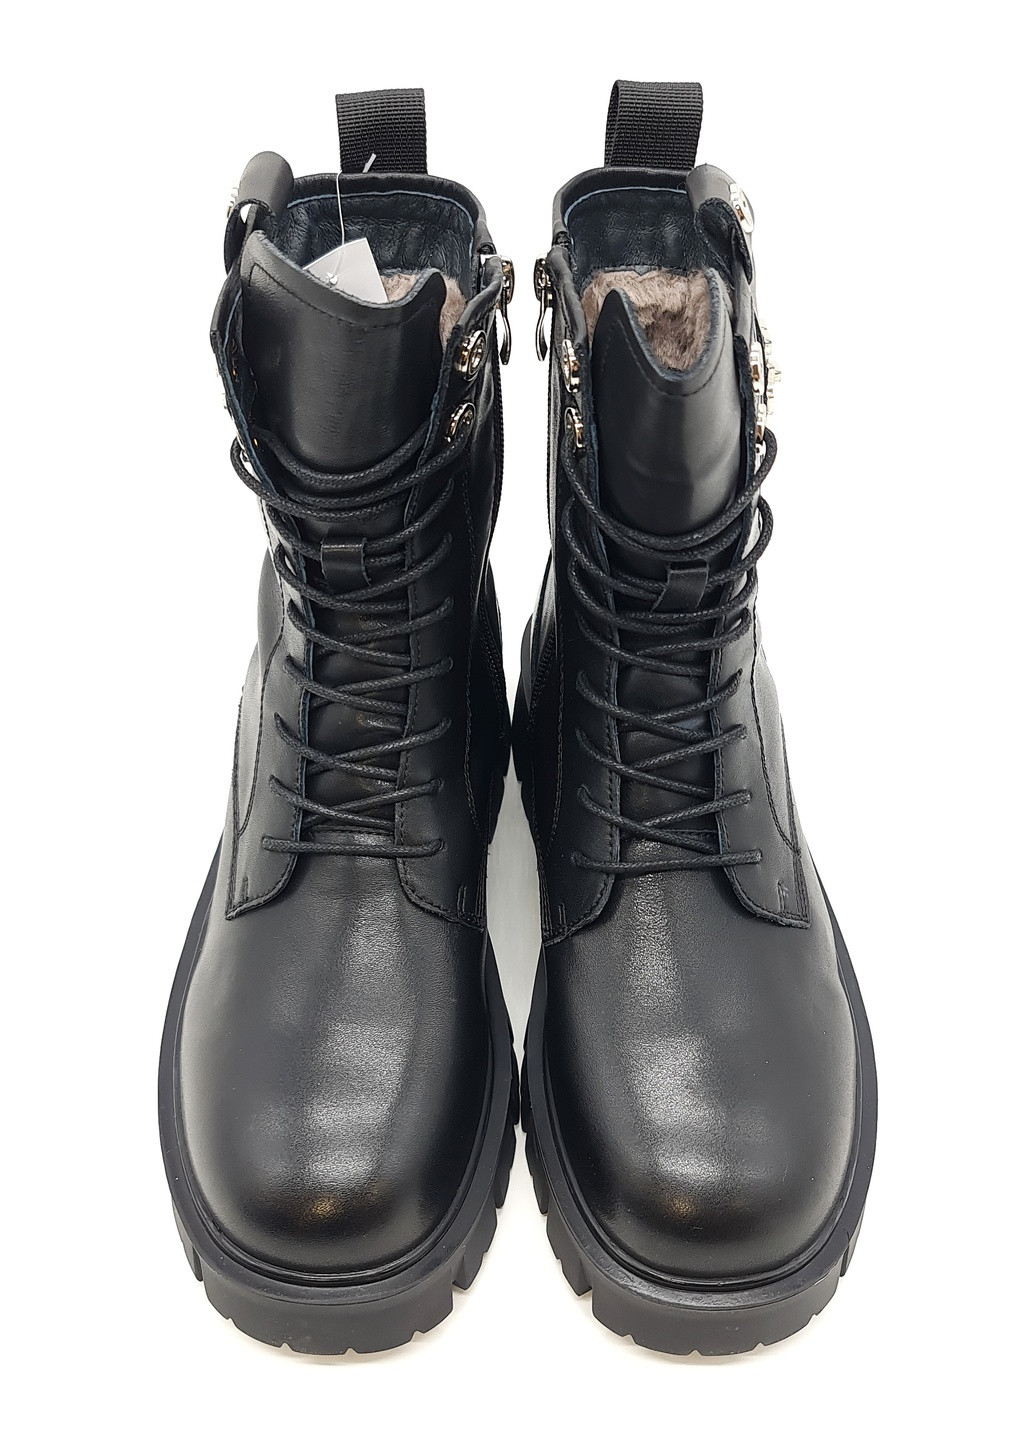 Осенние женские ботинки на овчине черные кожаные eg-14-3 23 см (р) Egga